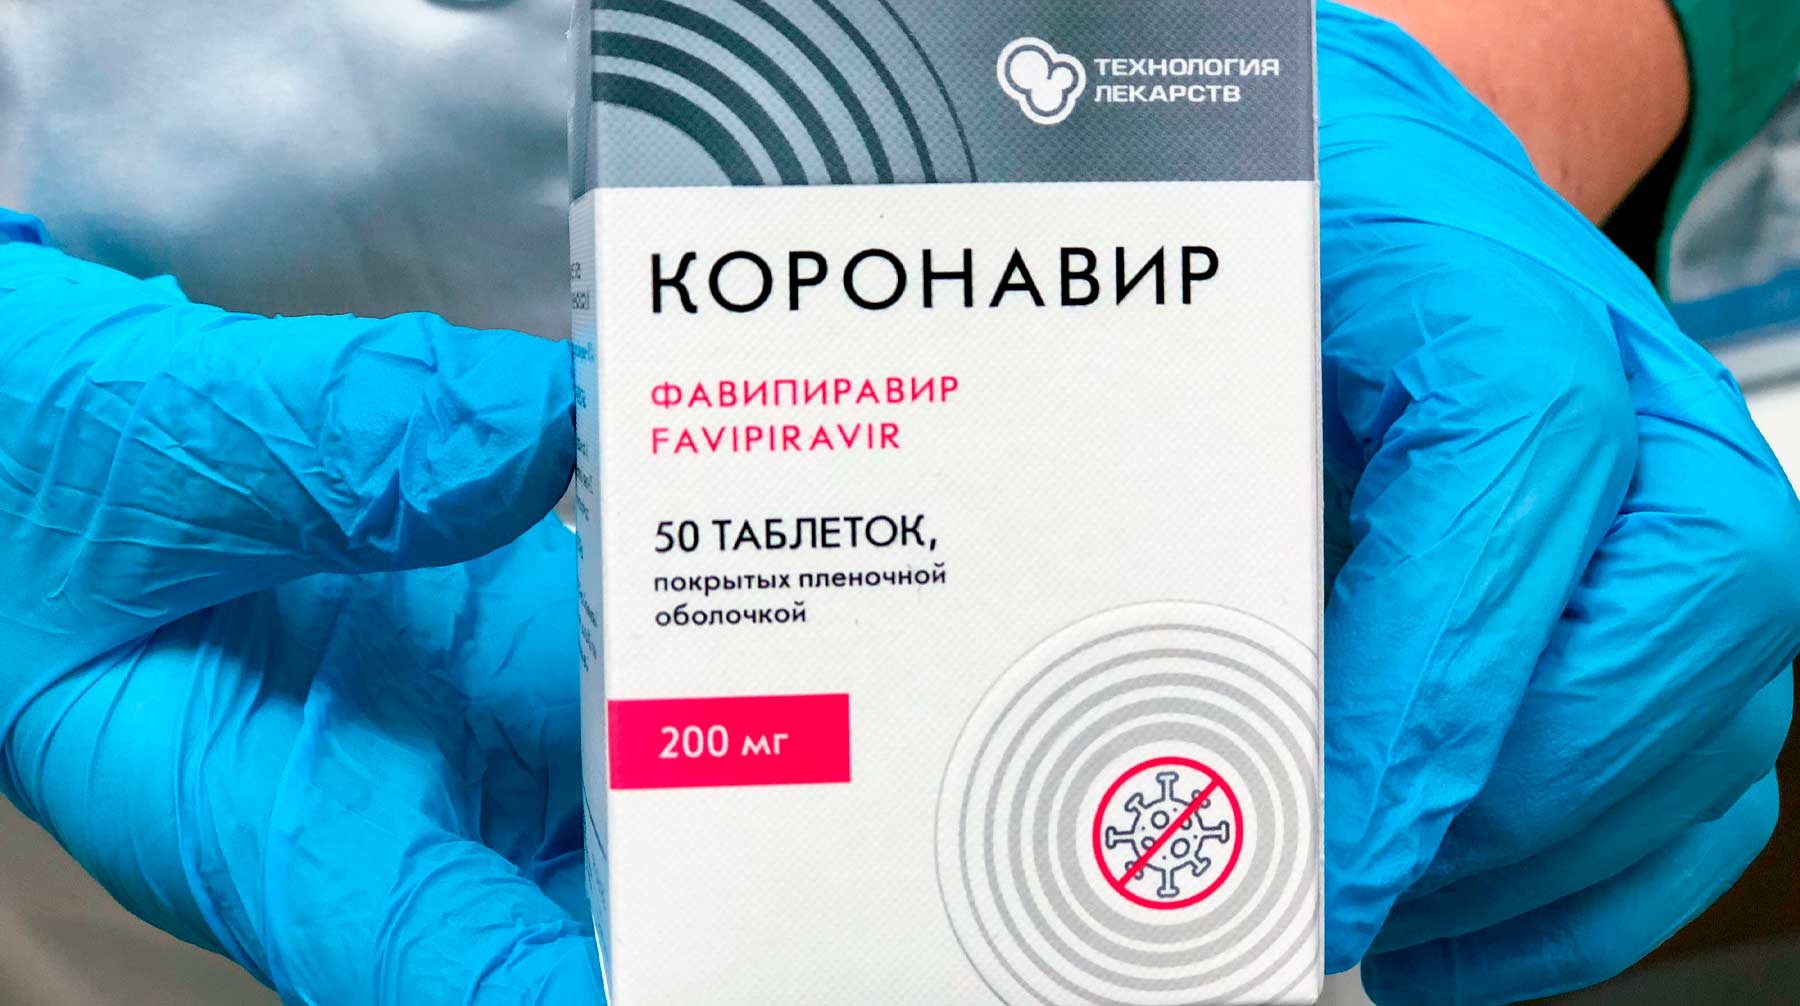 Dailystorm - Власти Москвы запустят систему контроля за наличием лекарств от COVID-19 в аптеках